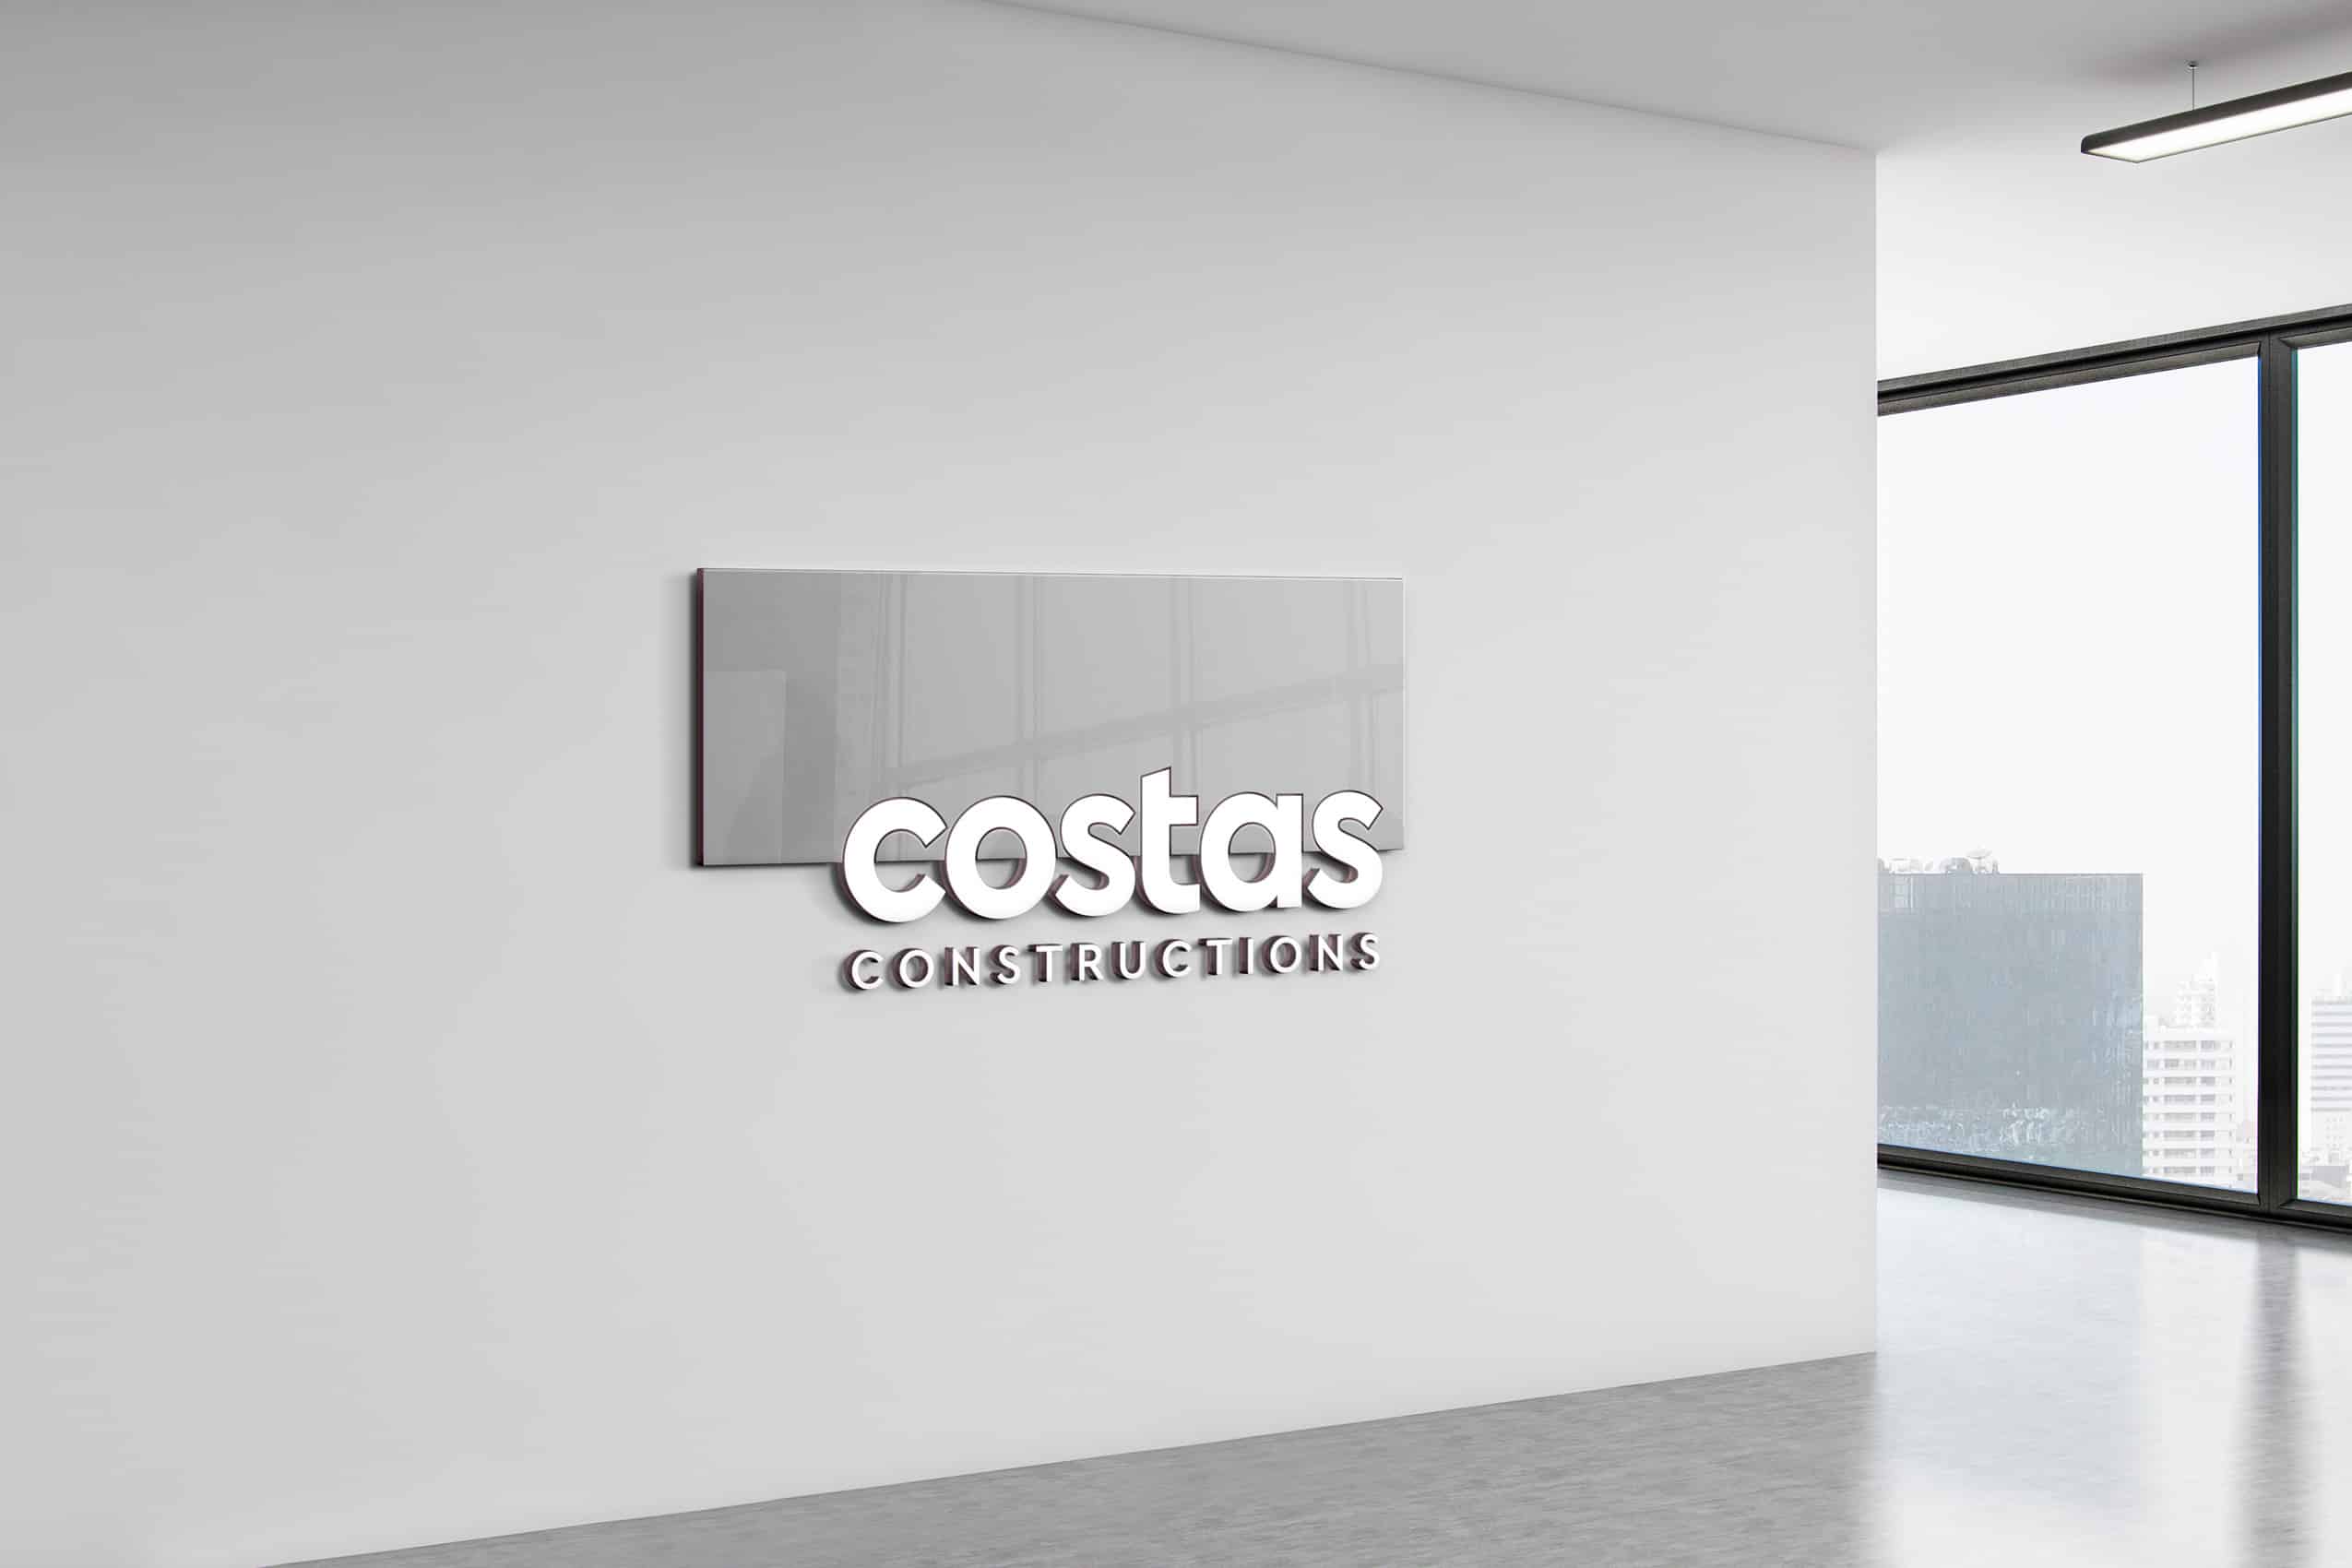 Costas Constructions - Branding and Website Design